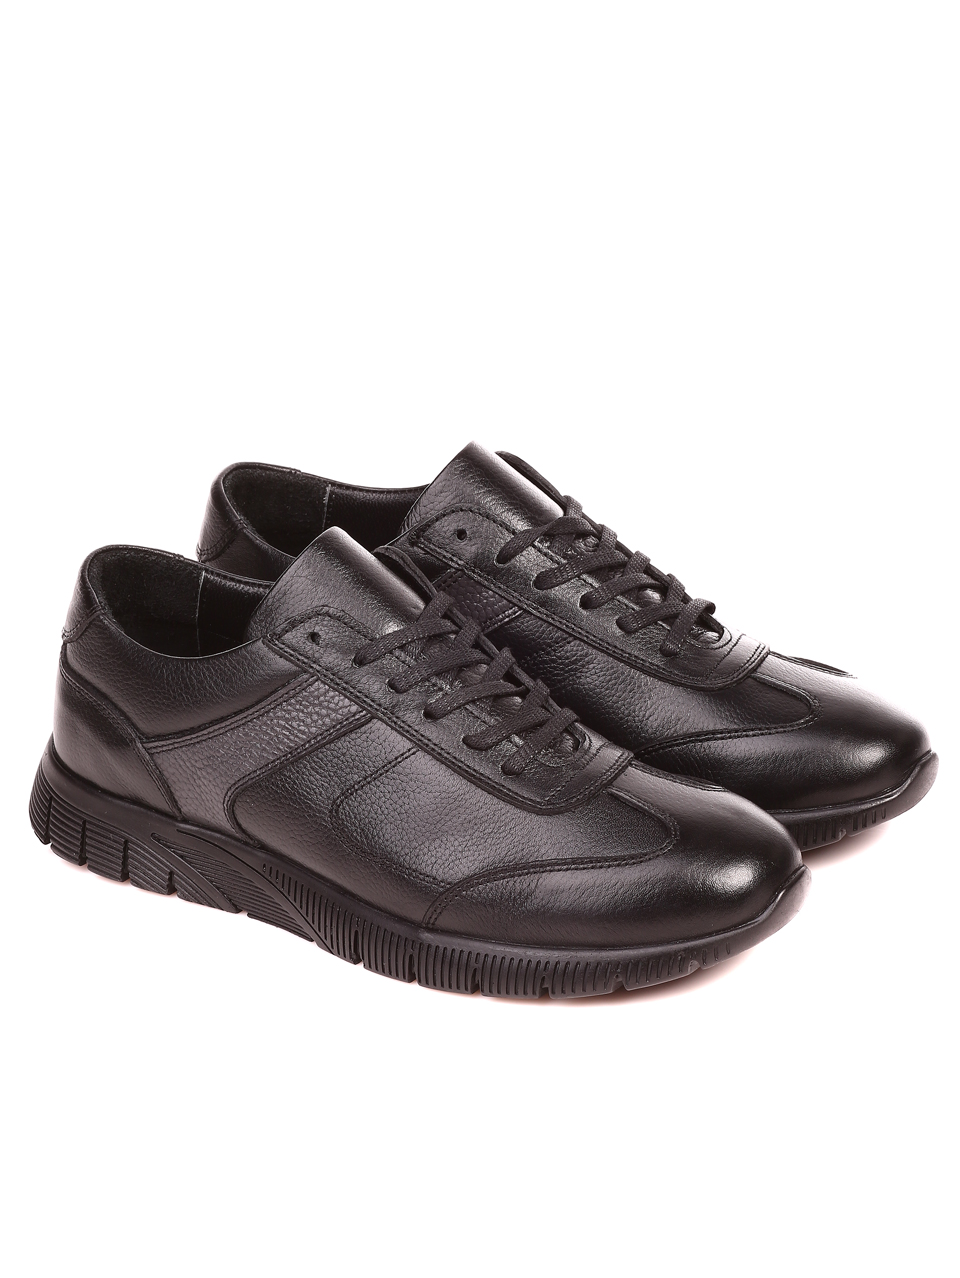 Ежедневни мъжки обувки от естествена кожа 7AT-21843 black